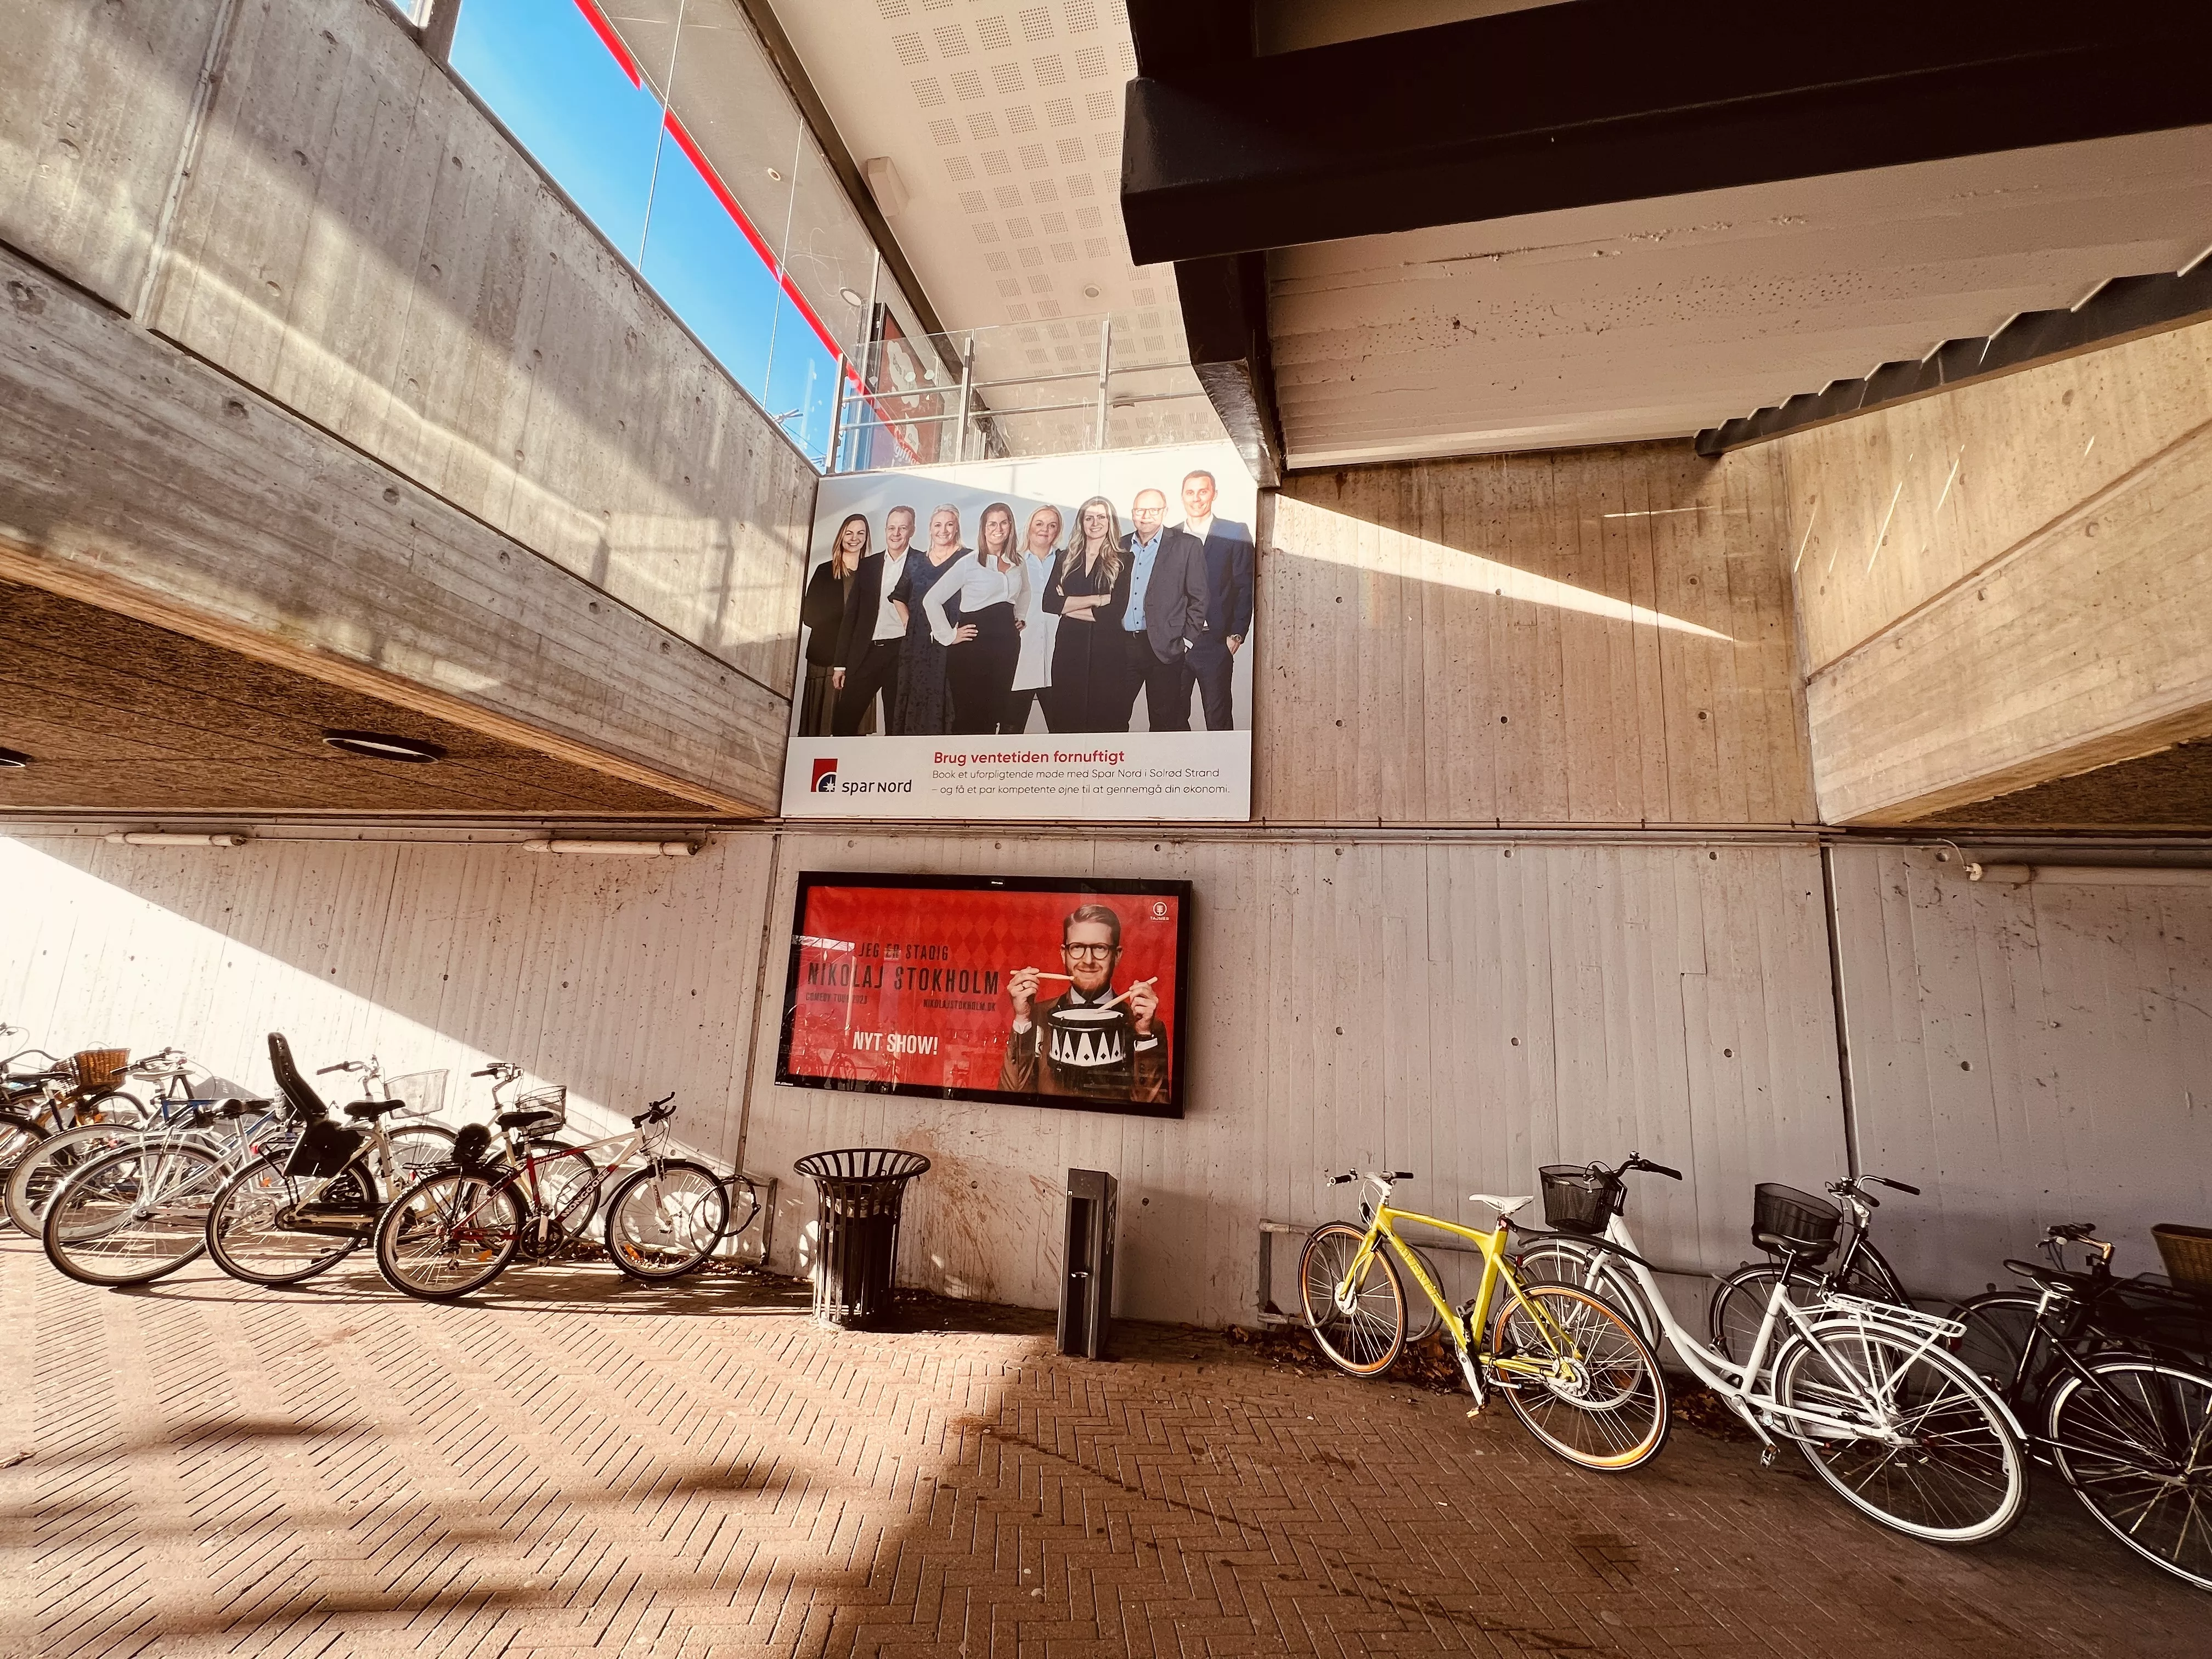 Billede af Solrød Strand Station.